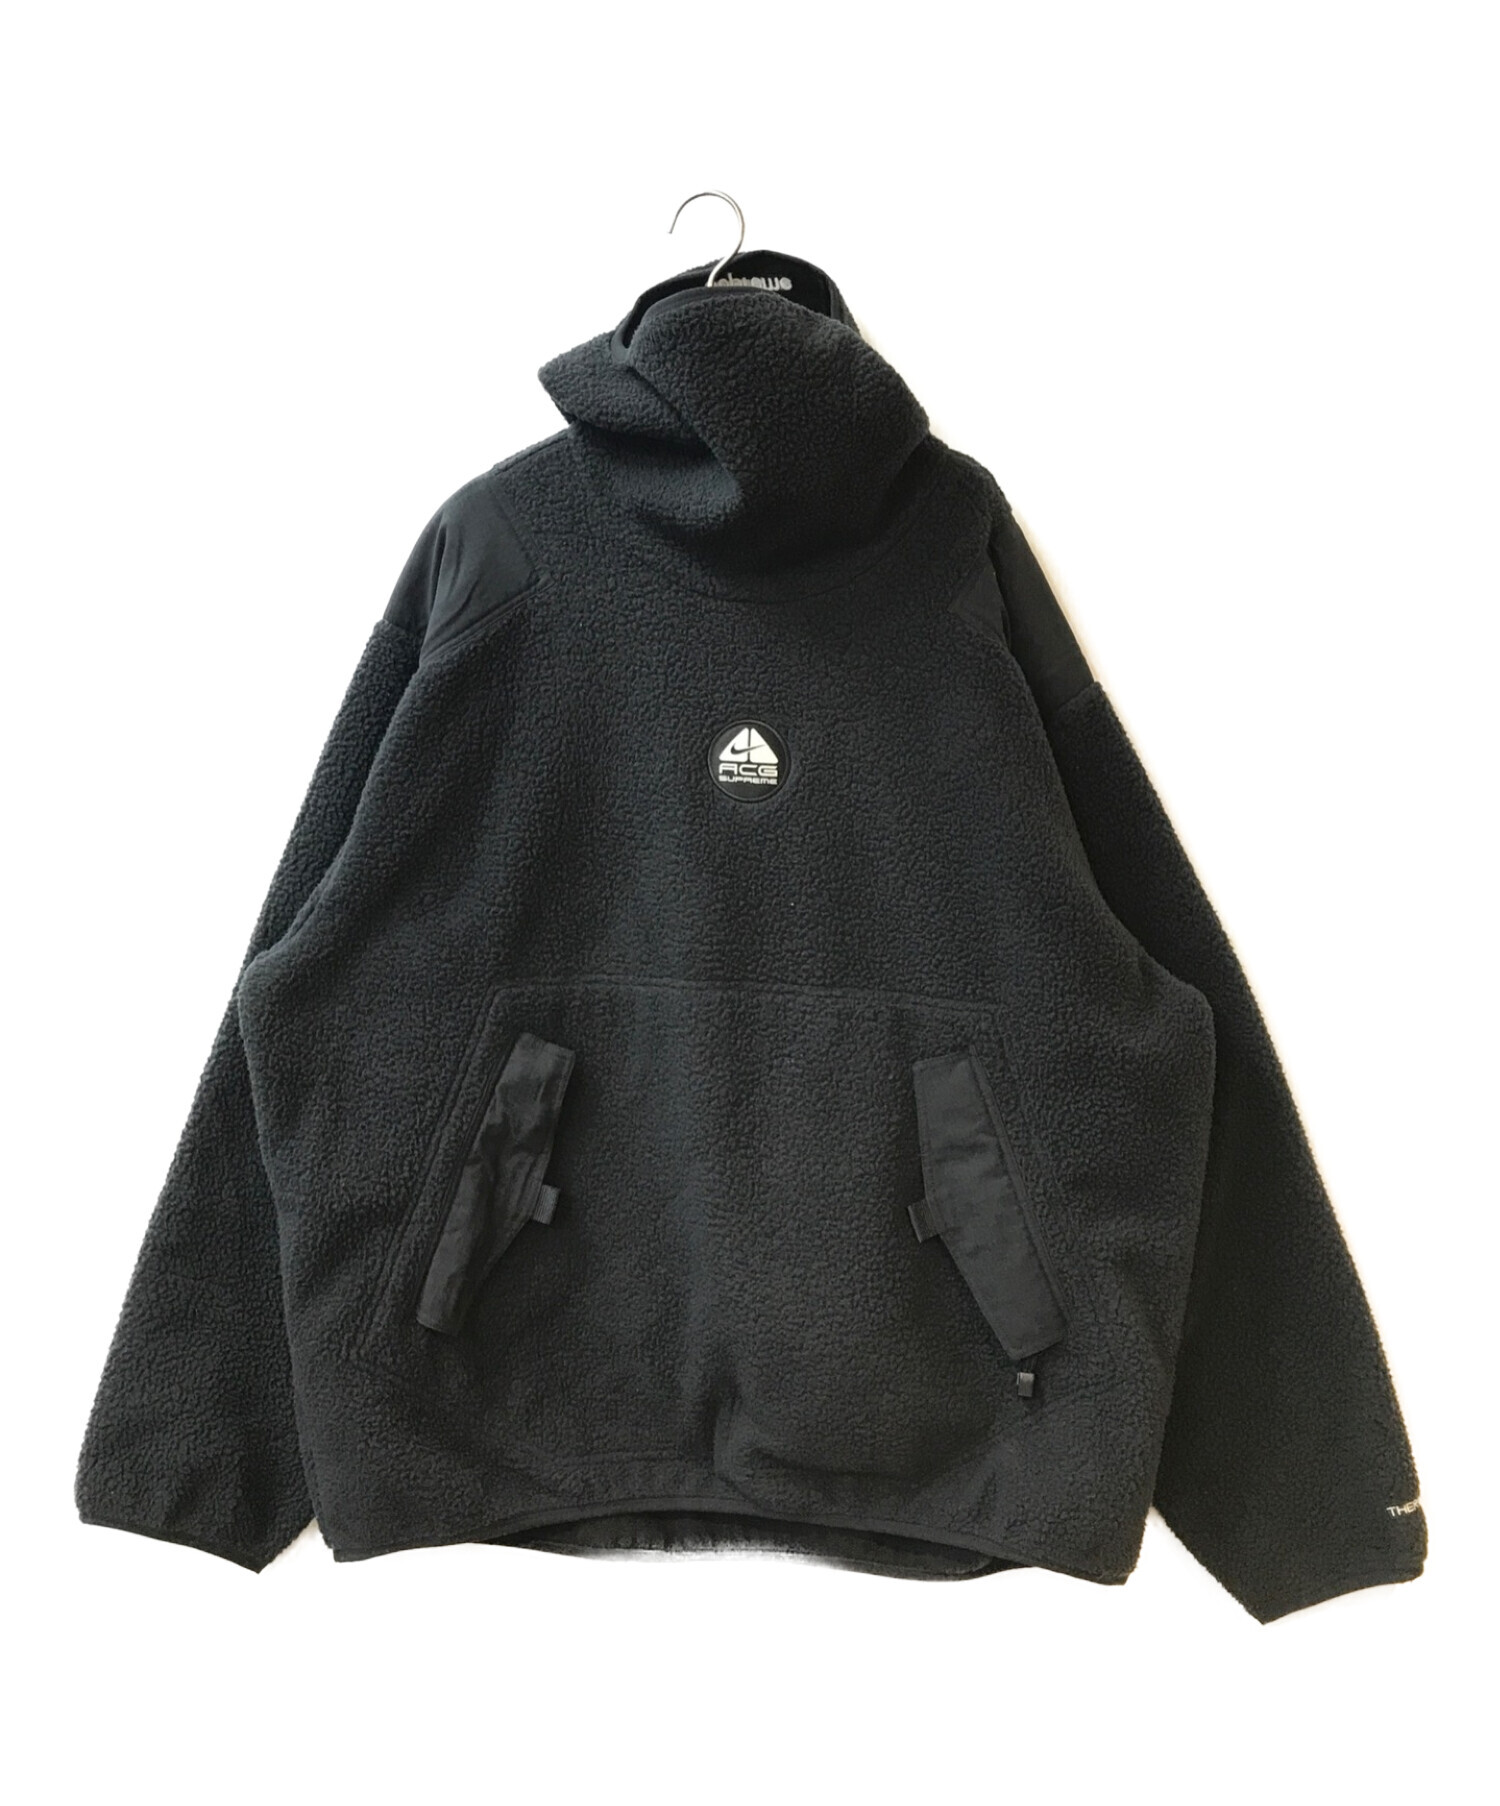 Supreme (シュプリーム) NIKE ACG (ナイキエージーシー) Fleece Pullover ブラック サイズ:XL